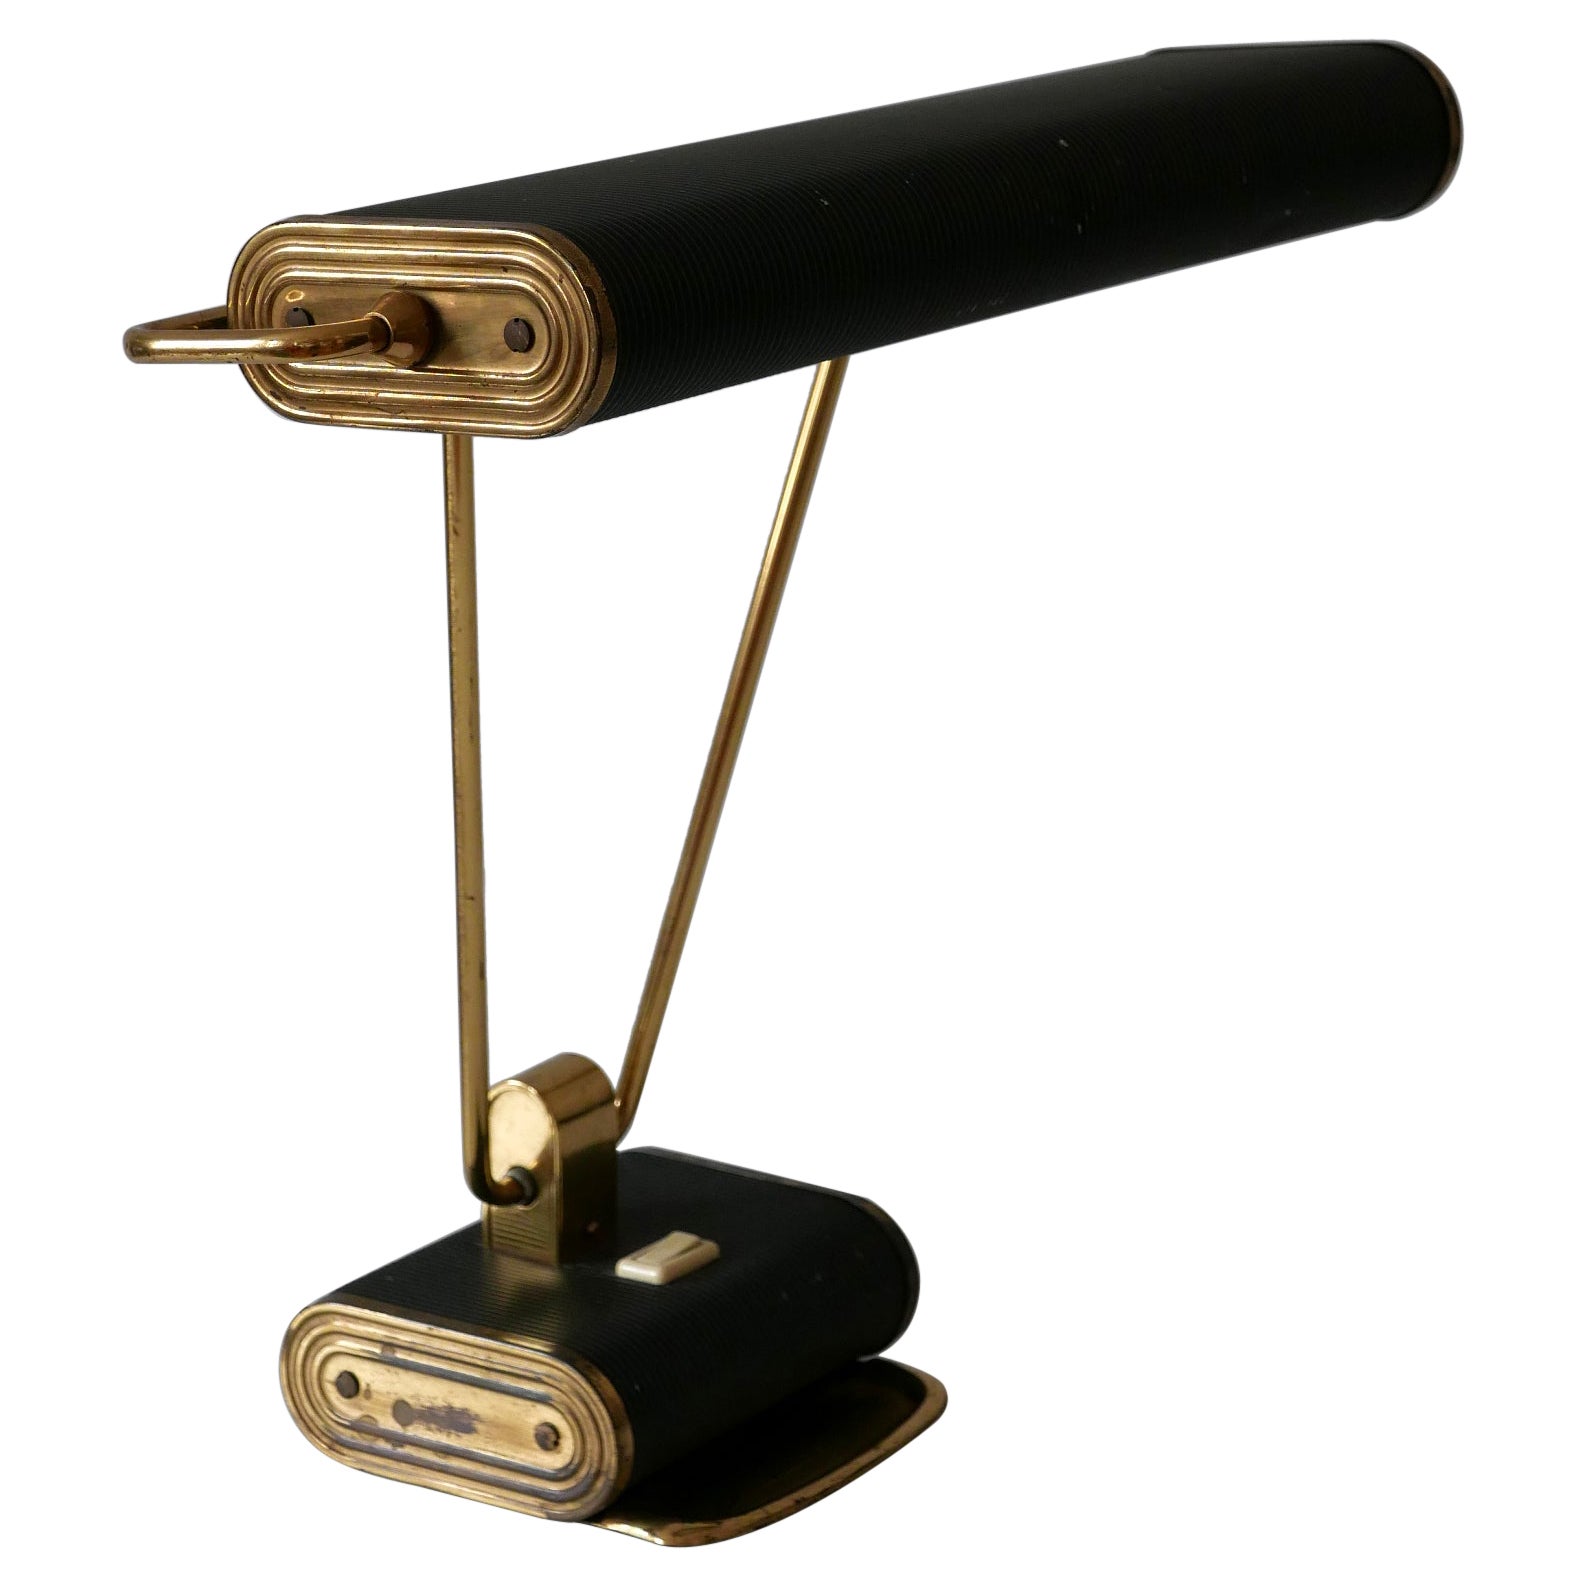 Art Deco Tischlampe oder Schreibtischleuchte 'No 71' von André Mounique für Jumo 1930er Jahre